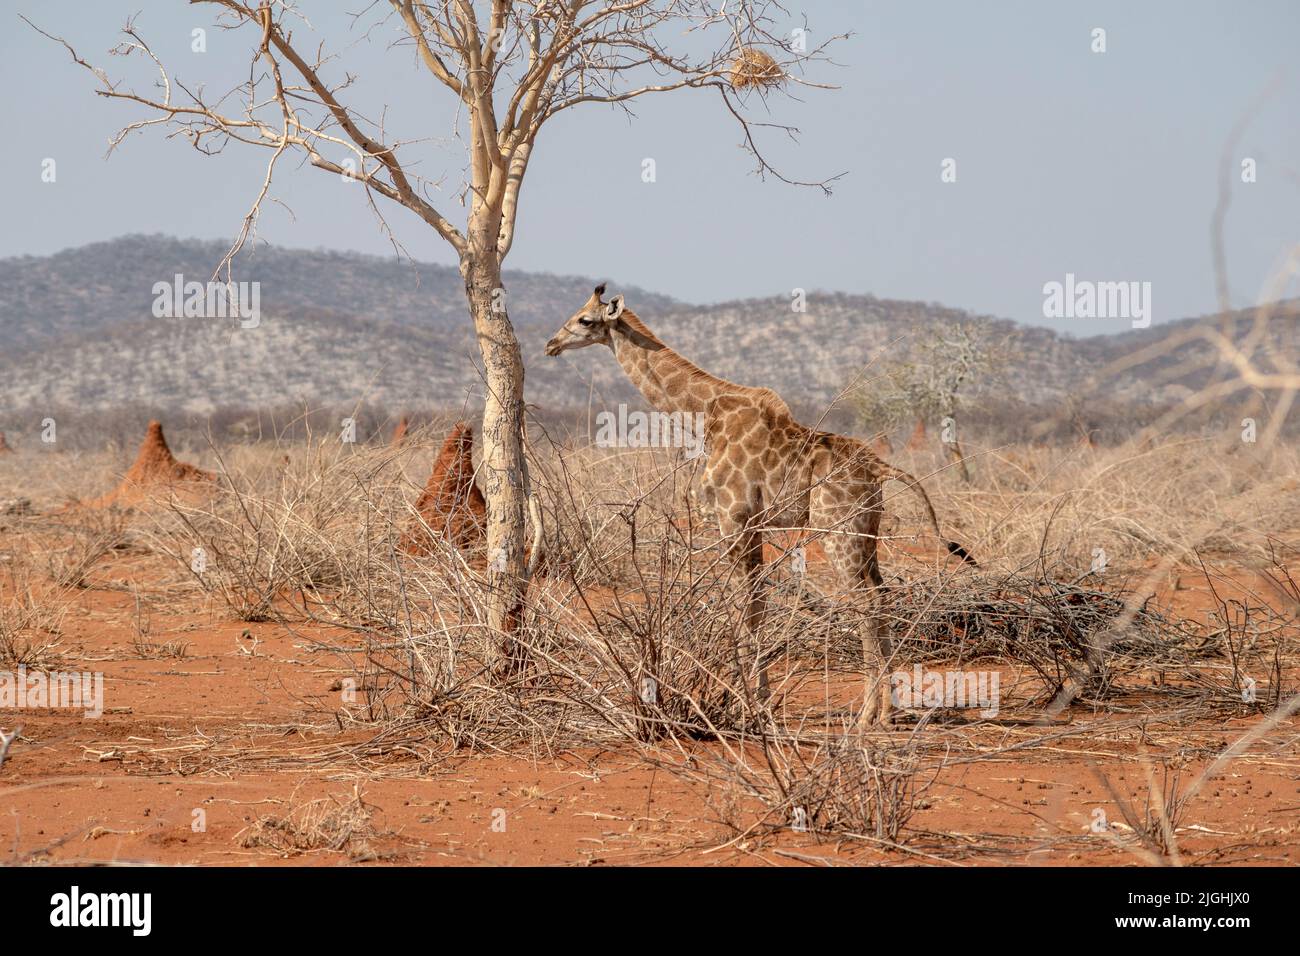 Girafe mangeant des branches d'arbre dans le désert de Namibie Banque D'Images